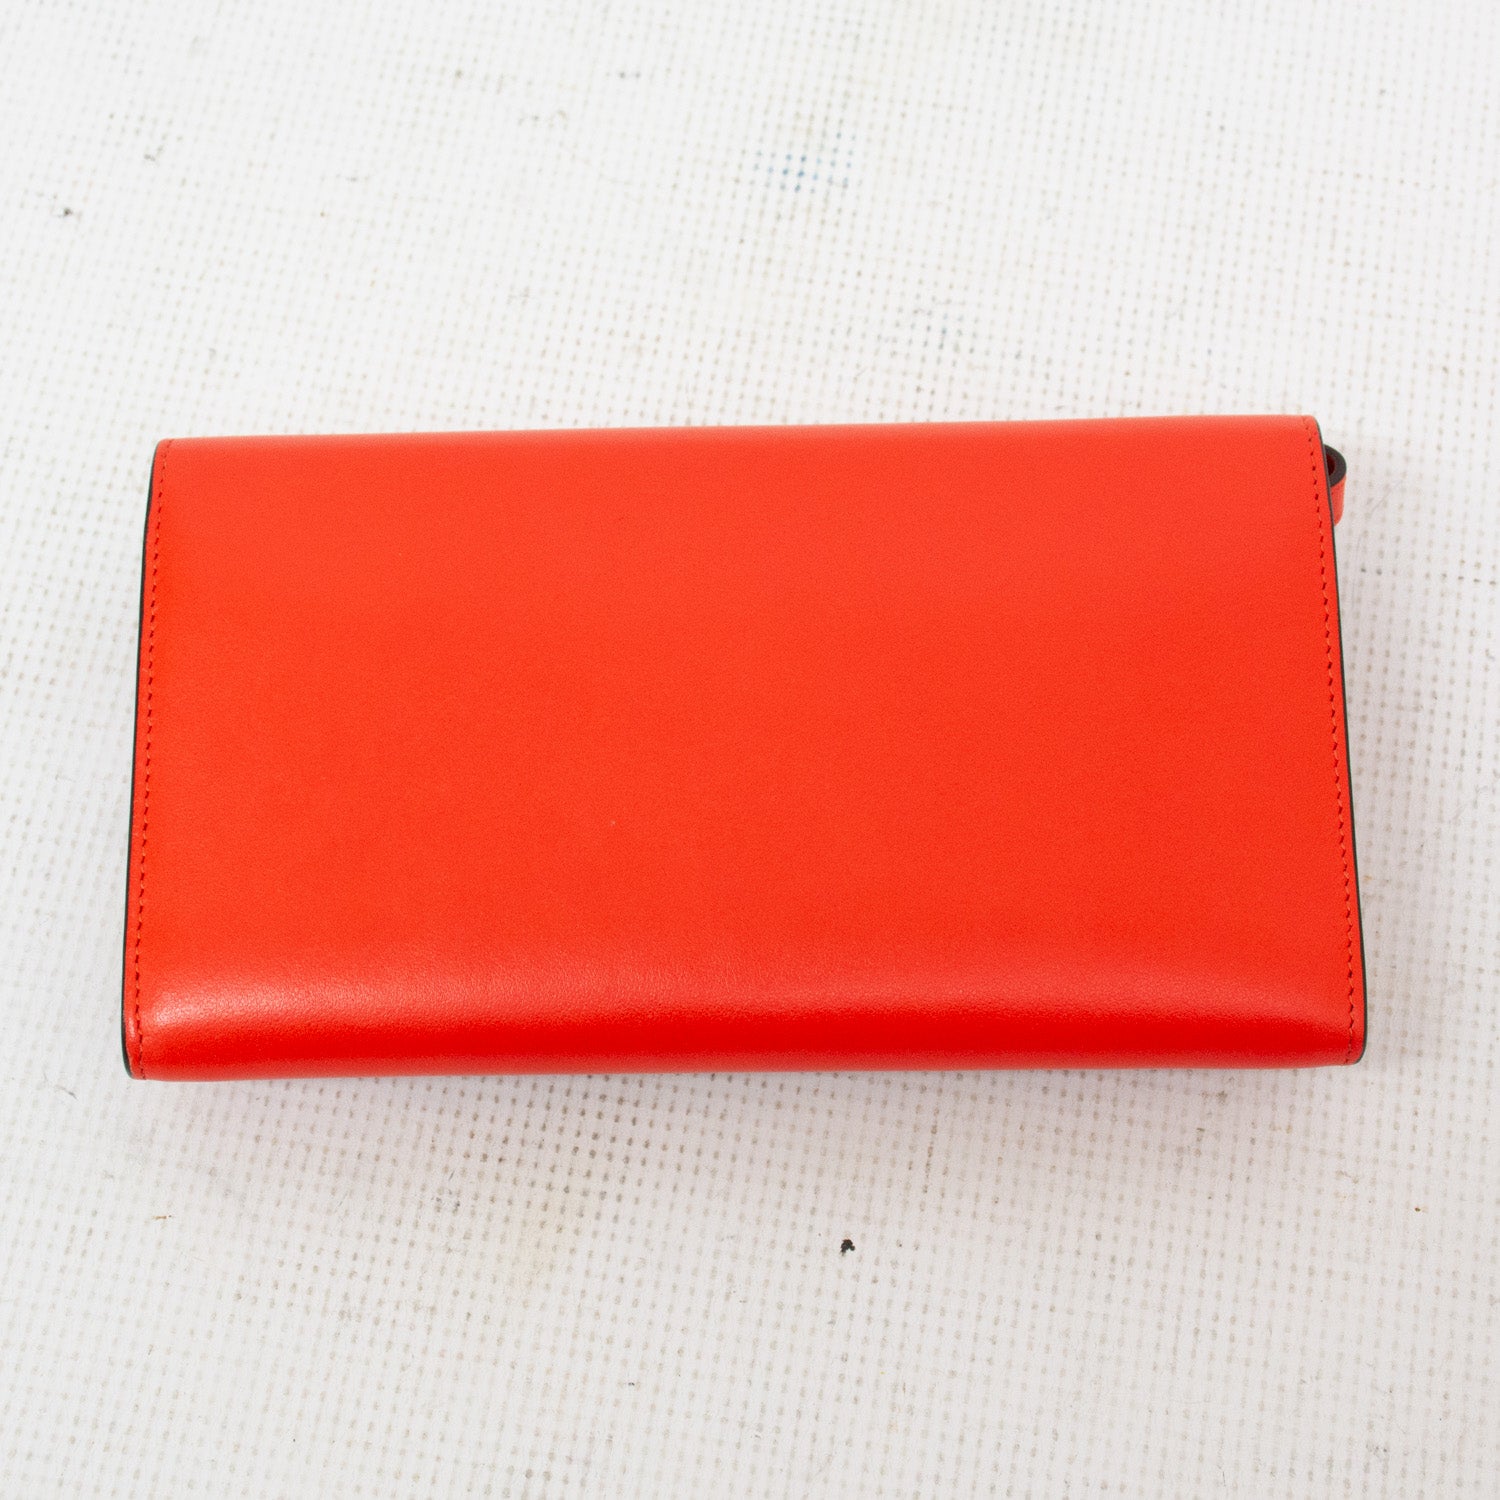 Christian Louboutin Macaron Fuchsia Spiked Wallet - Red/Orange